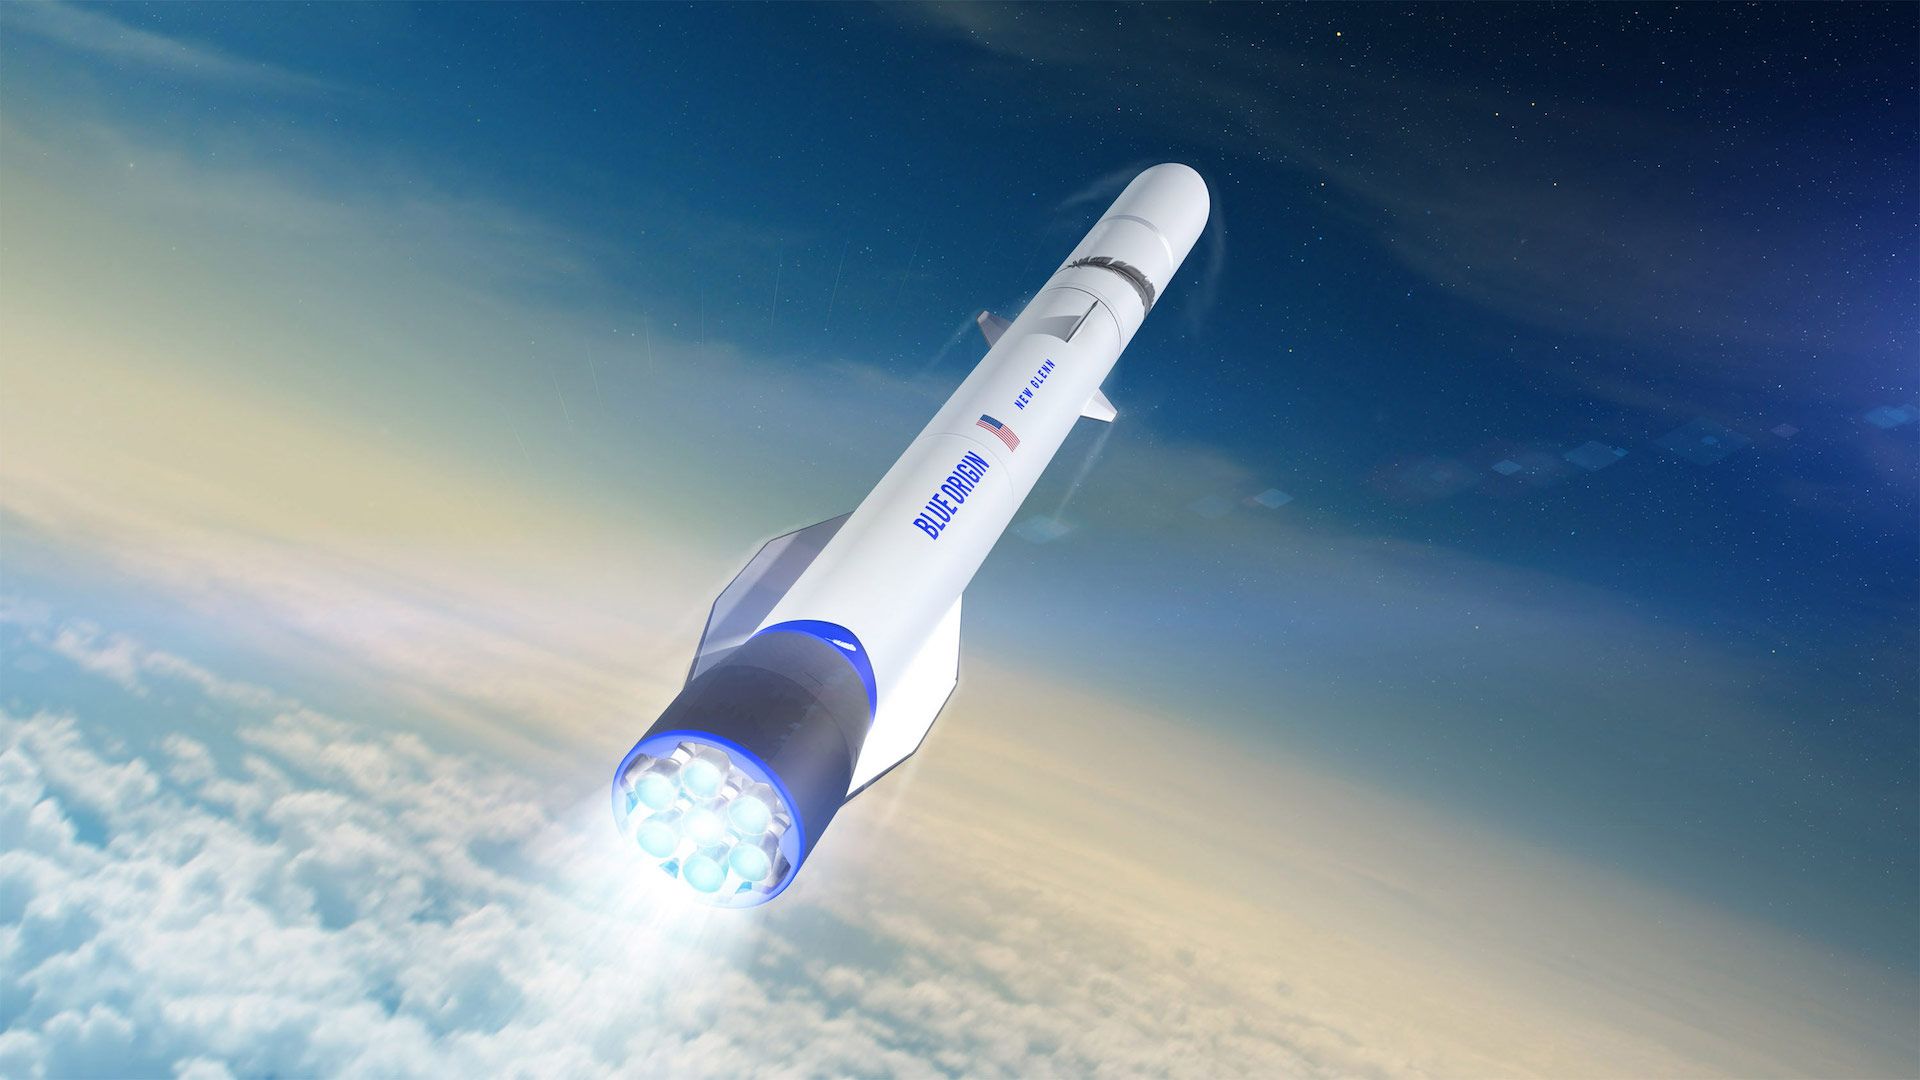 Artist's illustration of Blue Origin's New Glenn rocket.